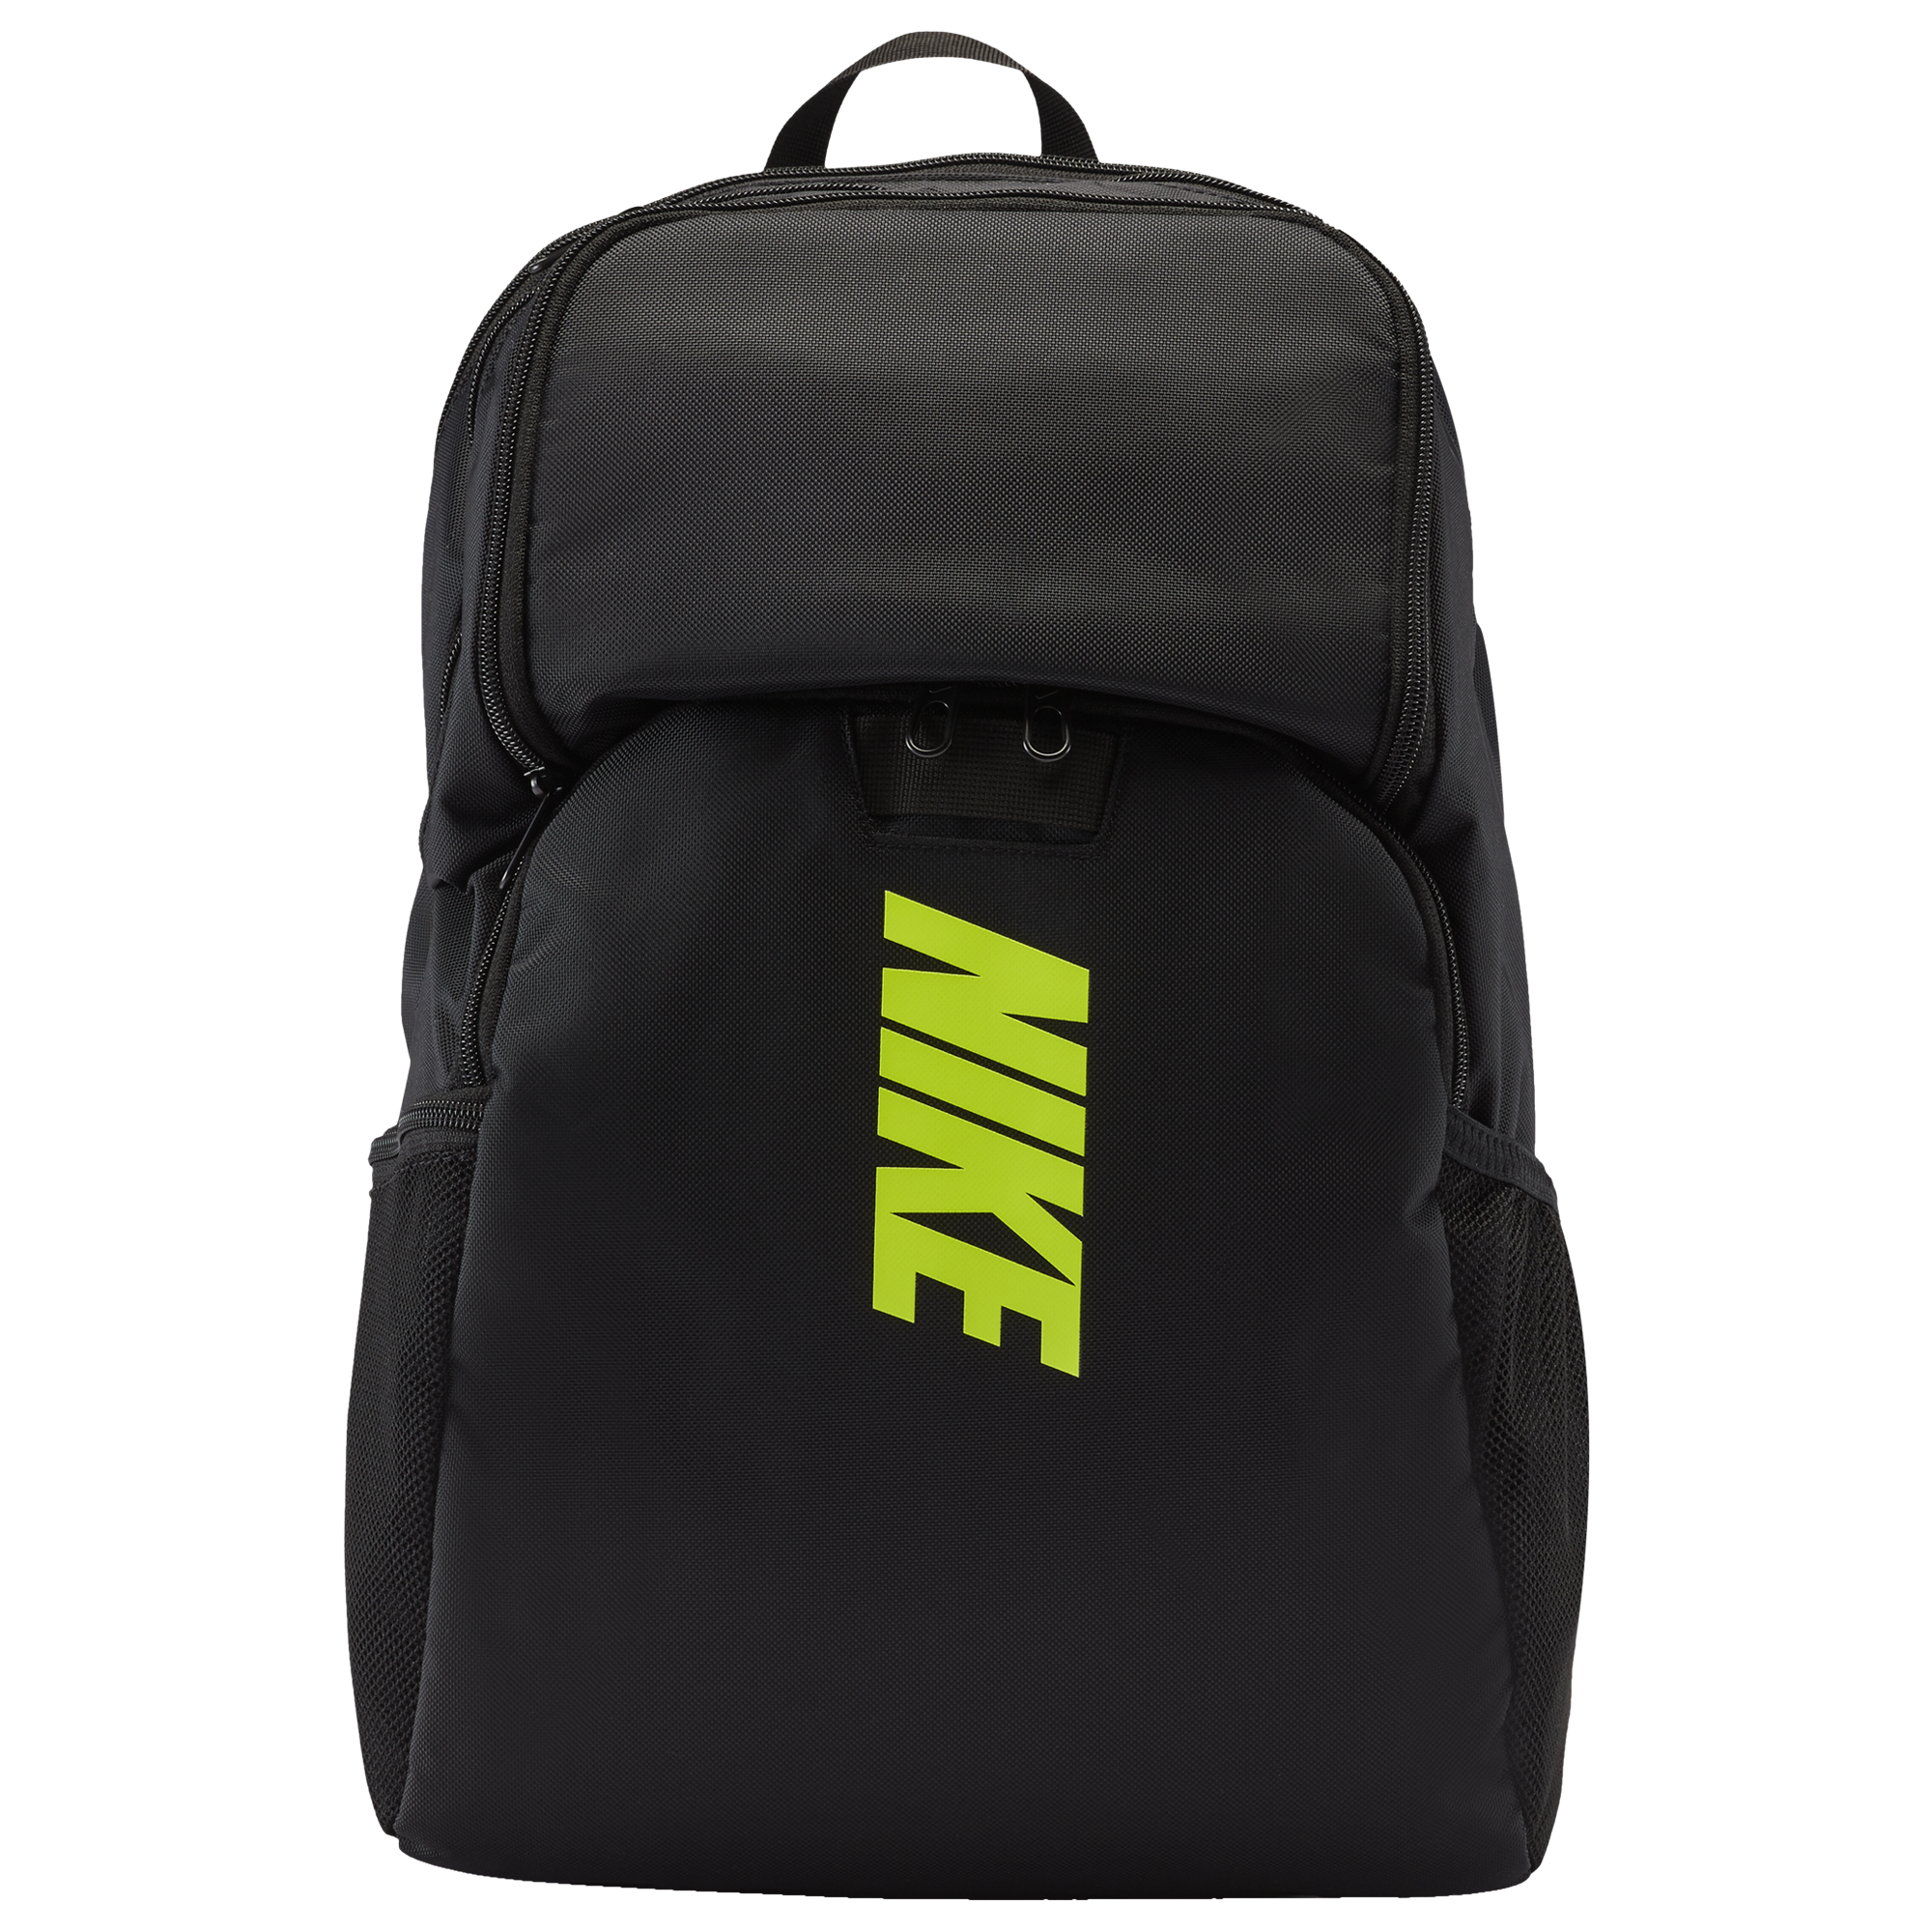 Nike Brasilia Varsity Backpack - Image 1 of 2 Enlarged Image